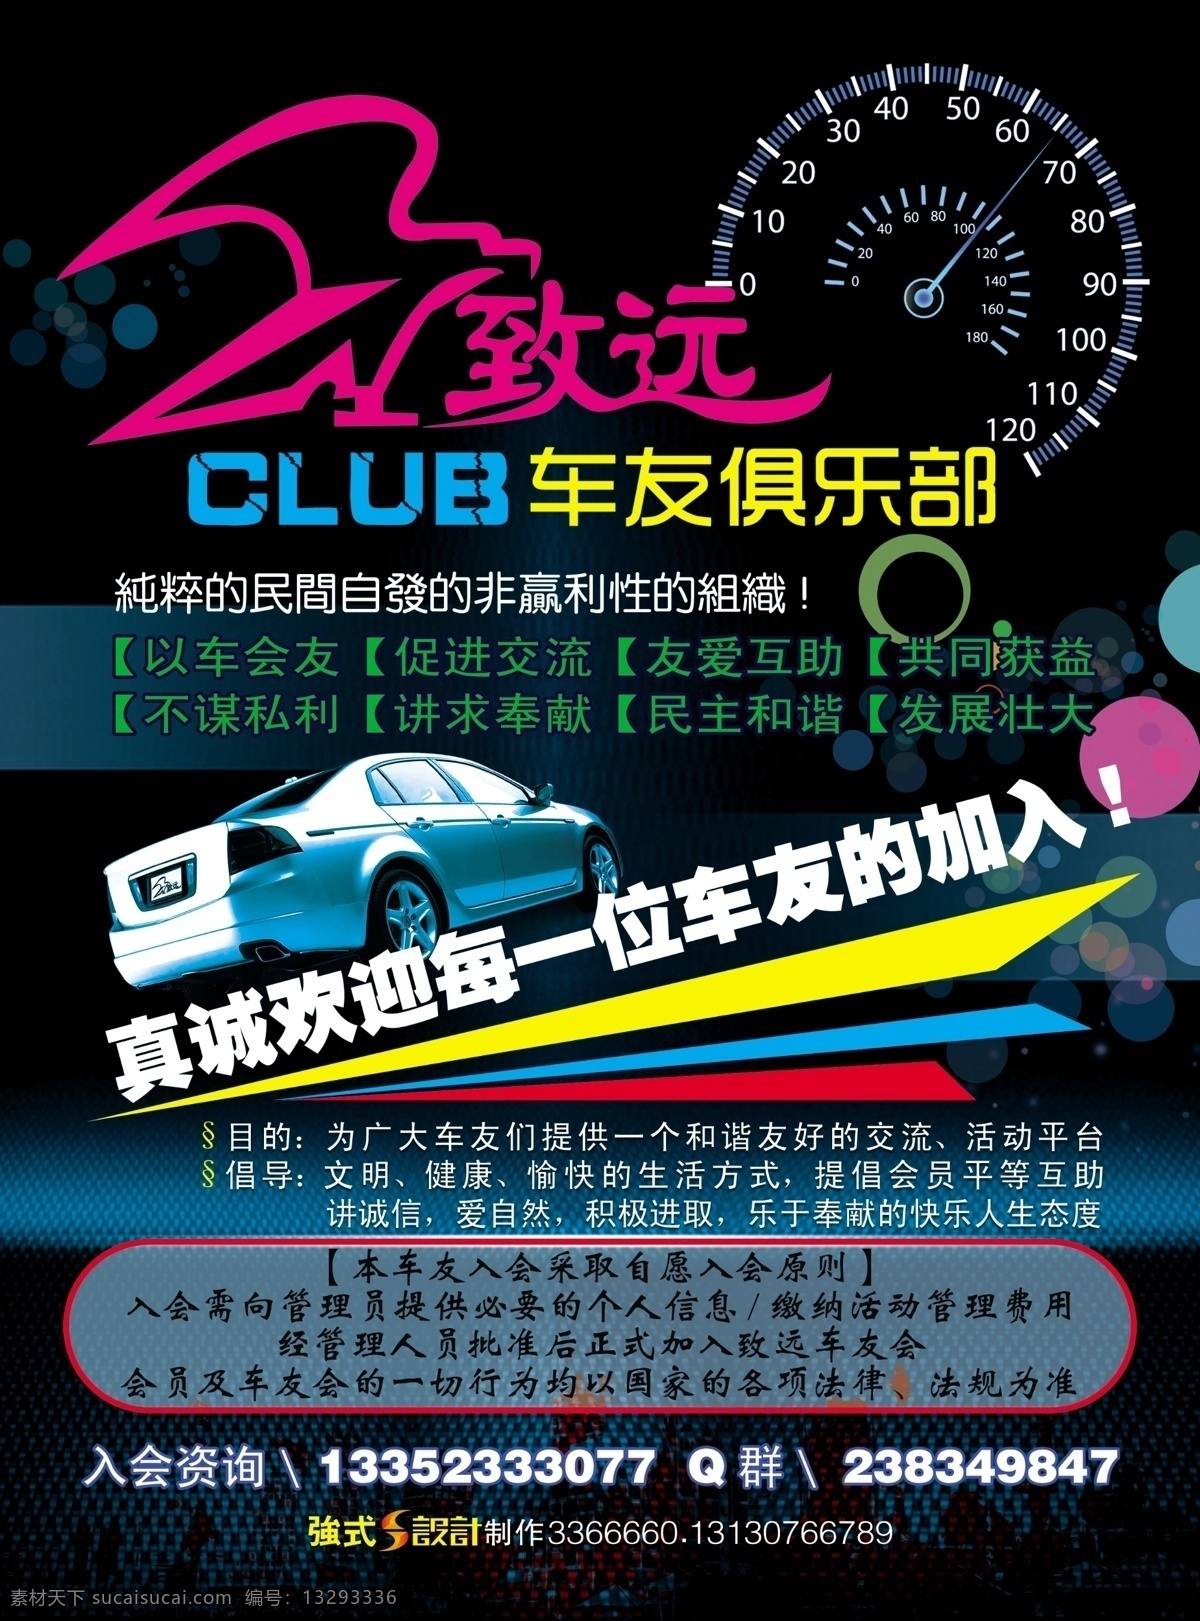 致远 车友 俱乐部 车友会 汽车仪表 宣传 club 欢迎加入 目的 原则 倡导 广告设计模板 源文件